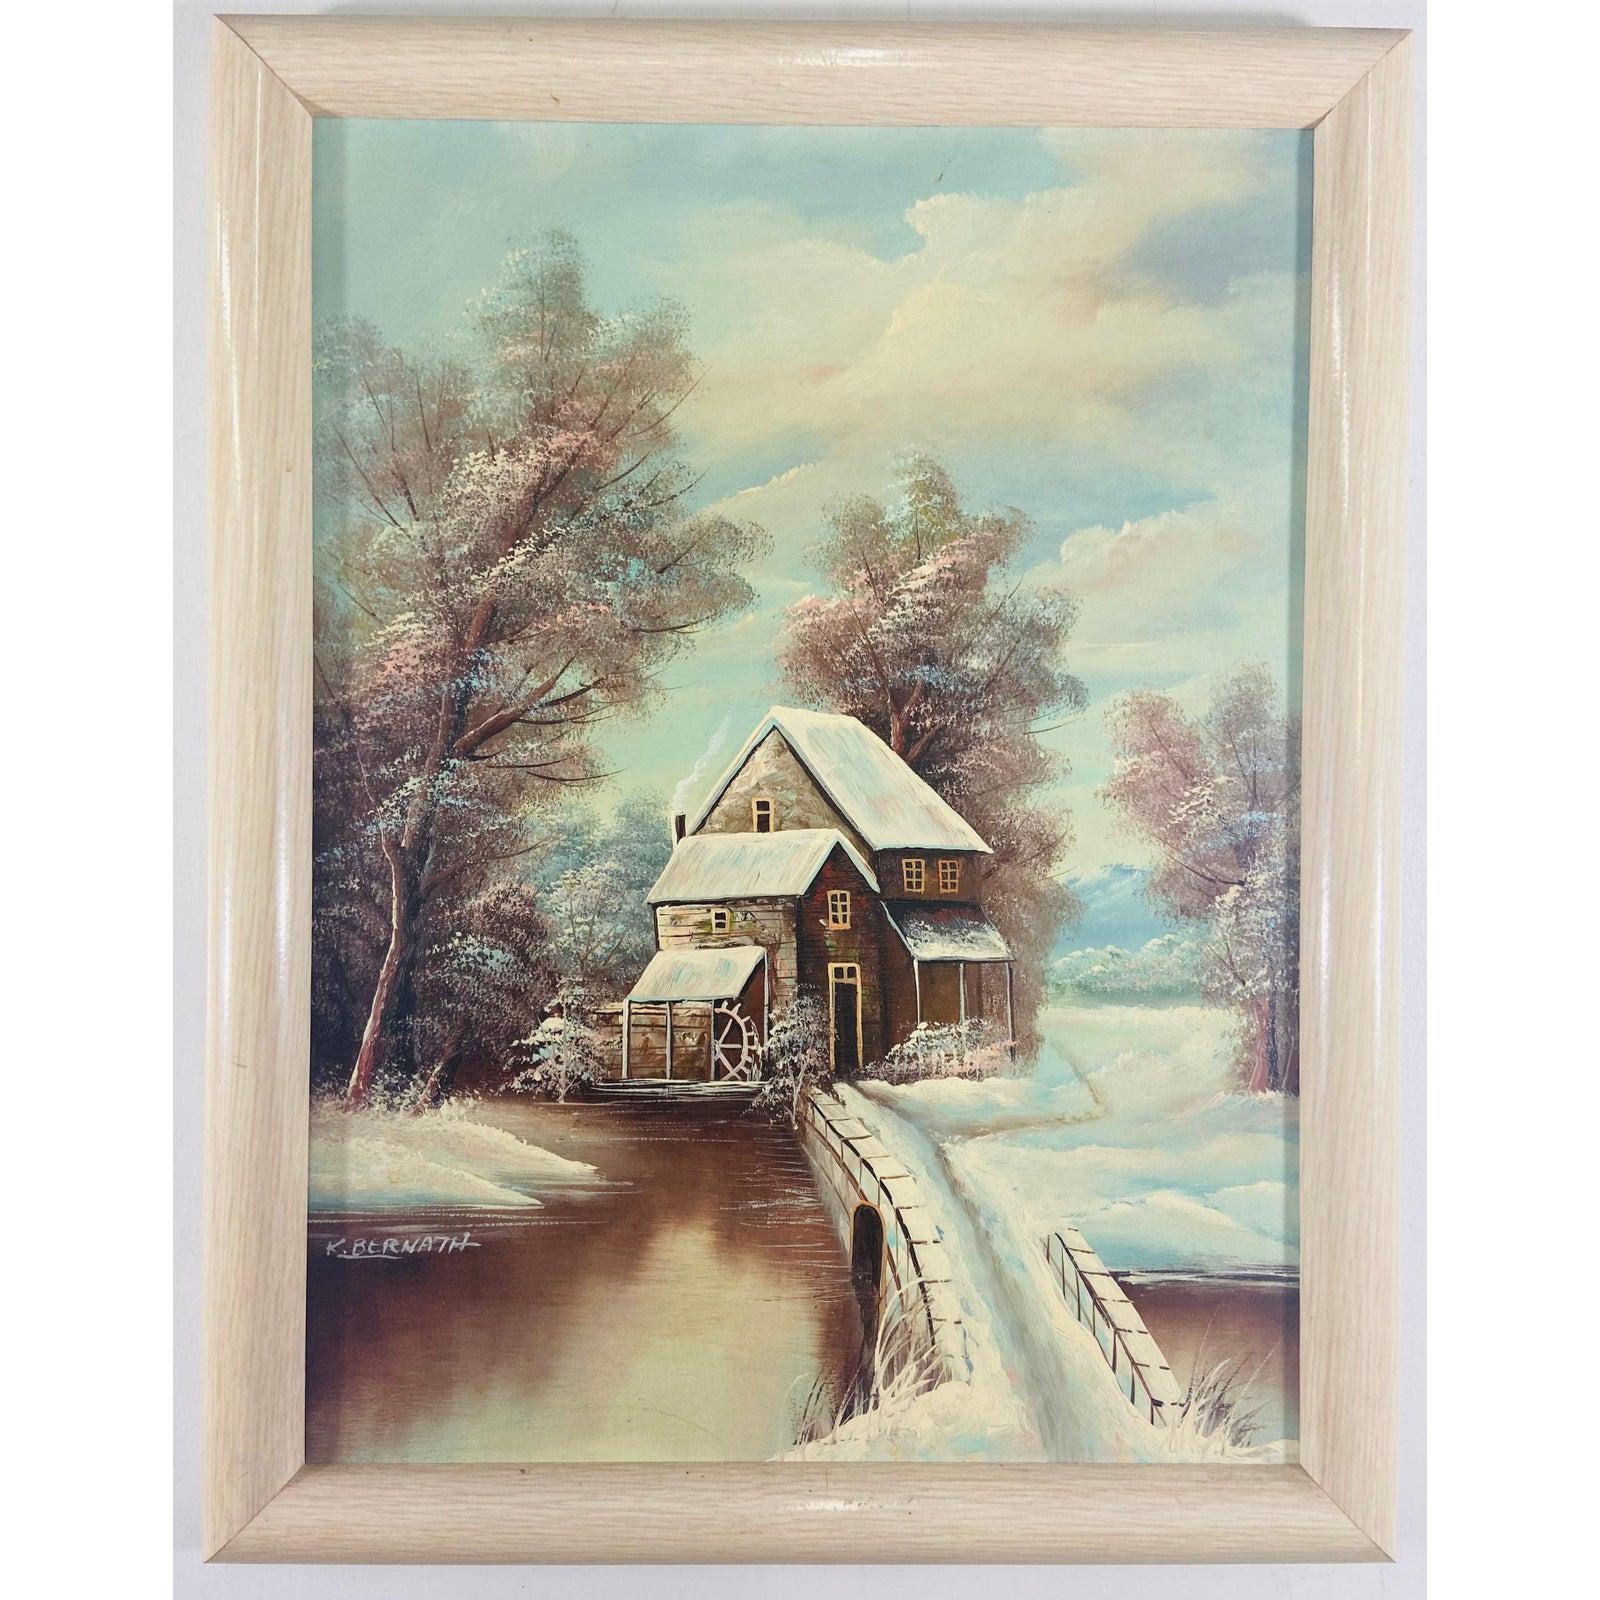 K. Bernath Outdoor Snow Scene Peinture à l'huile sur toile - Painting de K.Bernath